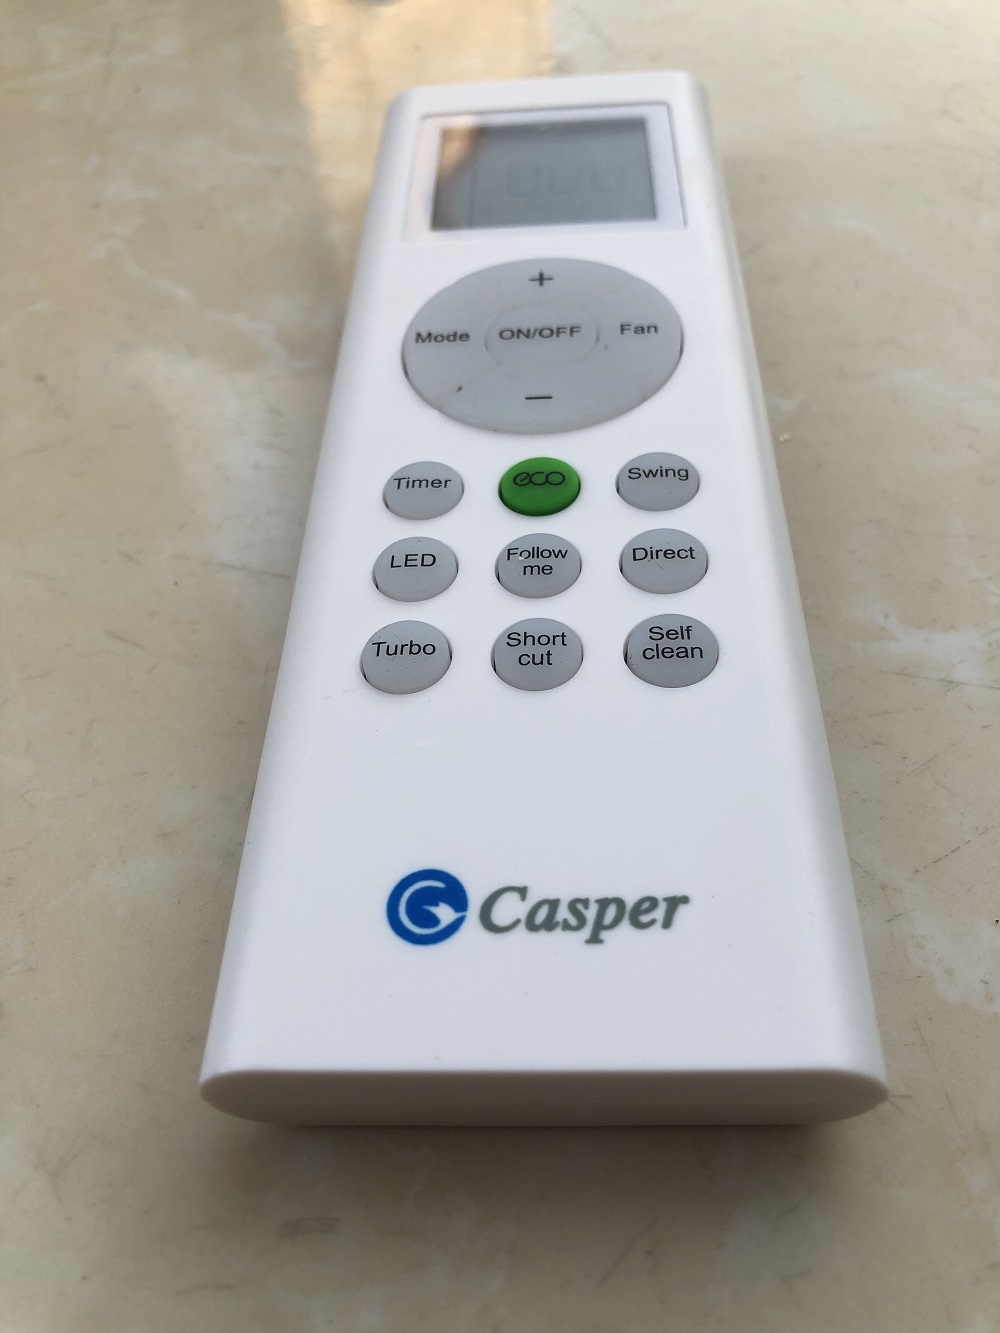 [Có bảo hành] [Chính hãng] Remote Điều khiển từ xa điều hòa Casper 1&amp;2 chiều Inverter- Hàng mới chính hãng mới 100%